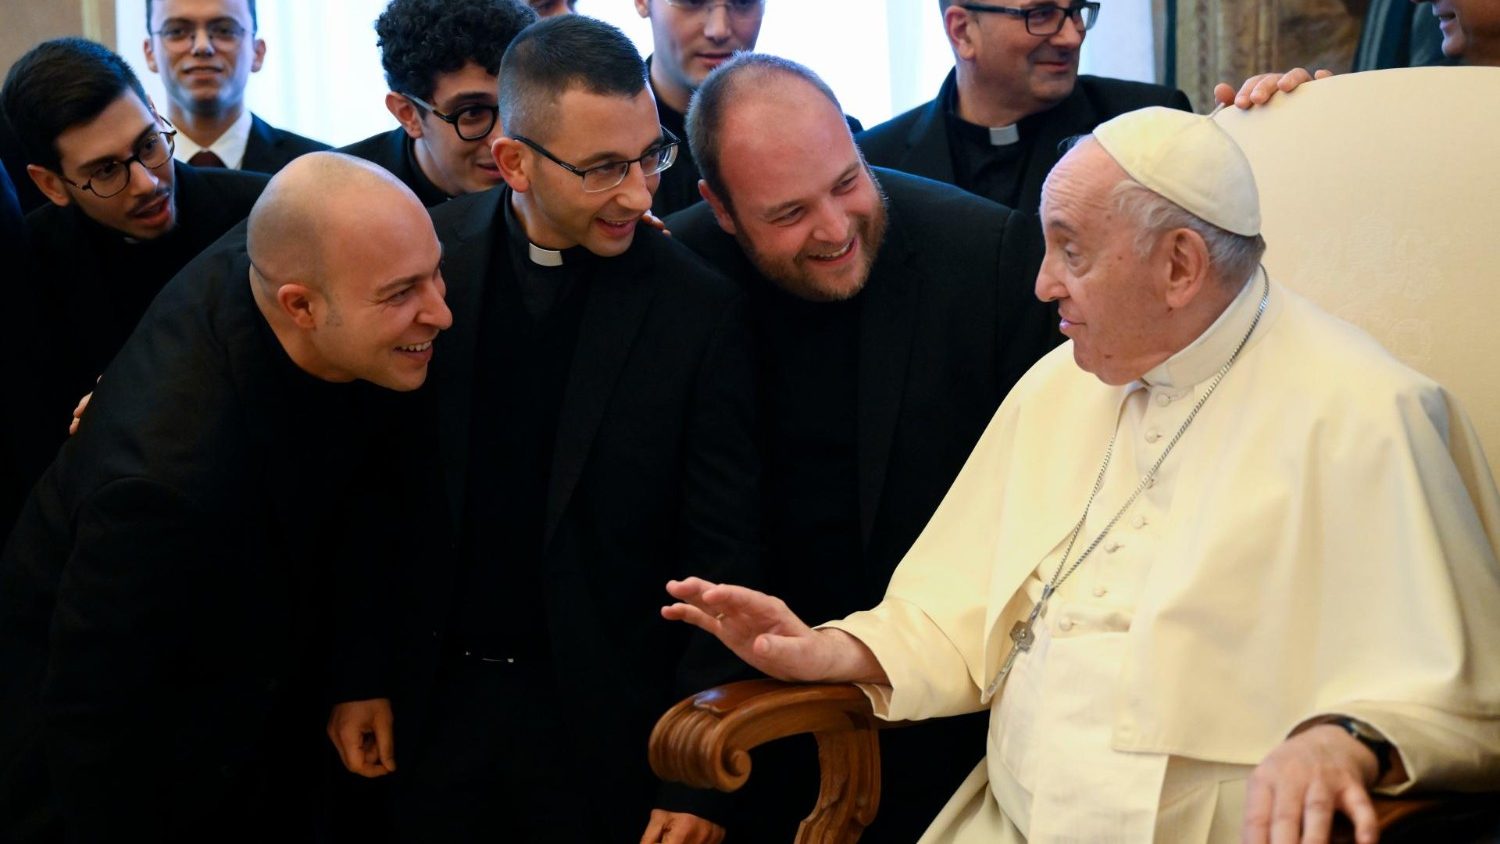 ĐTC nói với các linh mục của Roma: tôi đồng hành cùng anh em